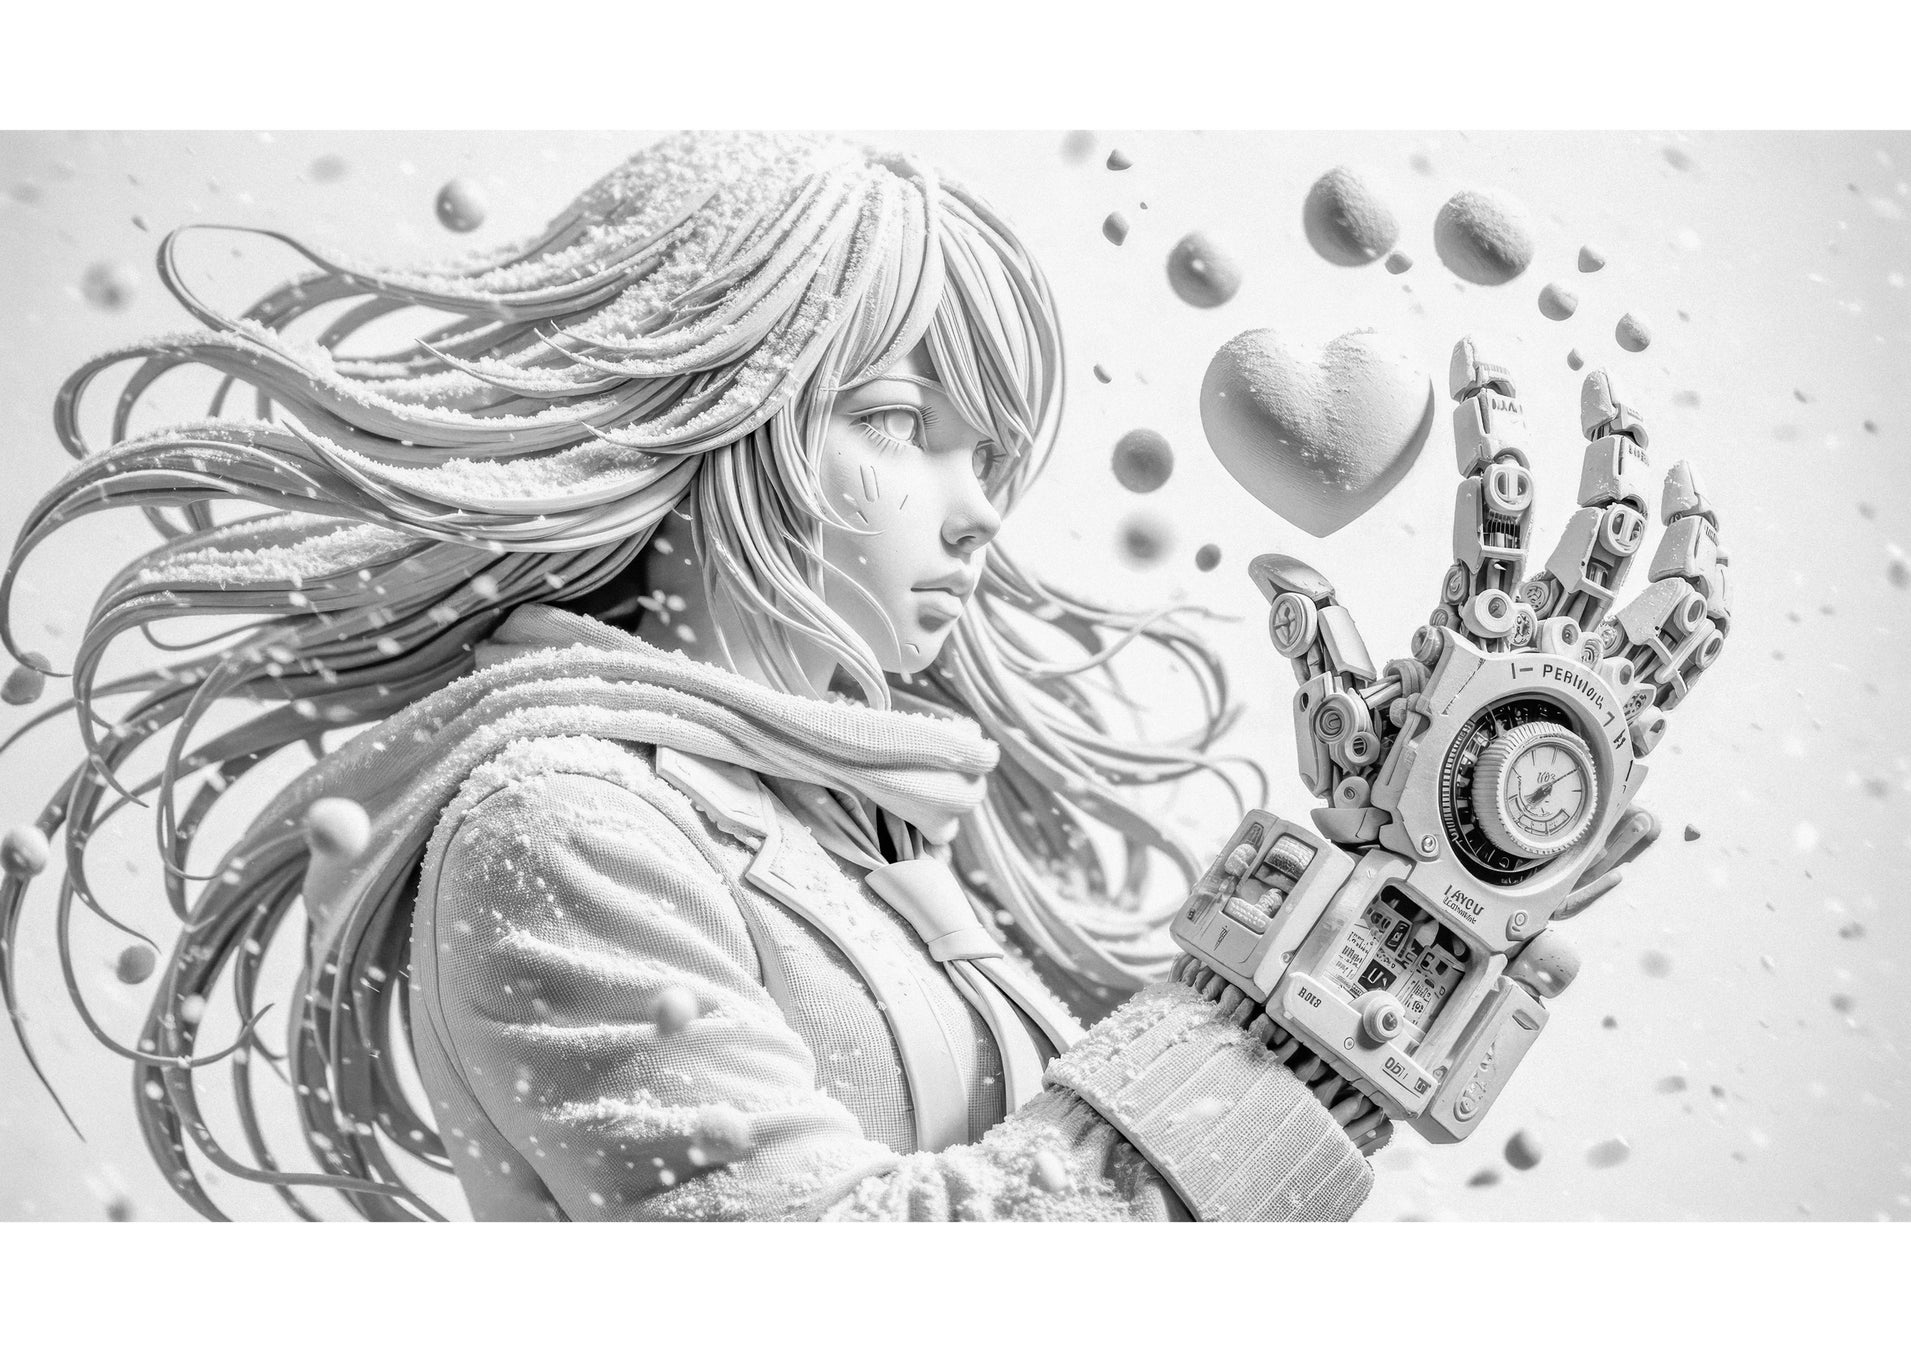 澤村徹AIアート展「突撃恋愛少女」を4月2日（火）より新宿マルイ本館で開催